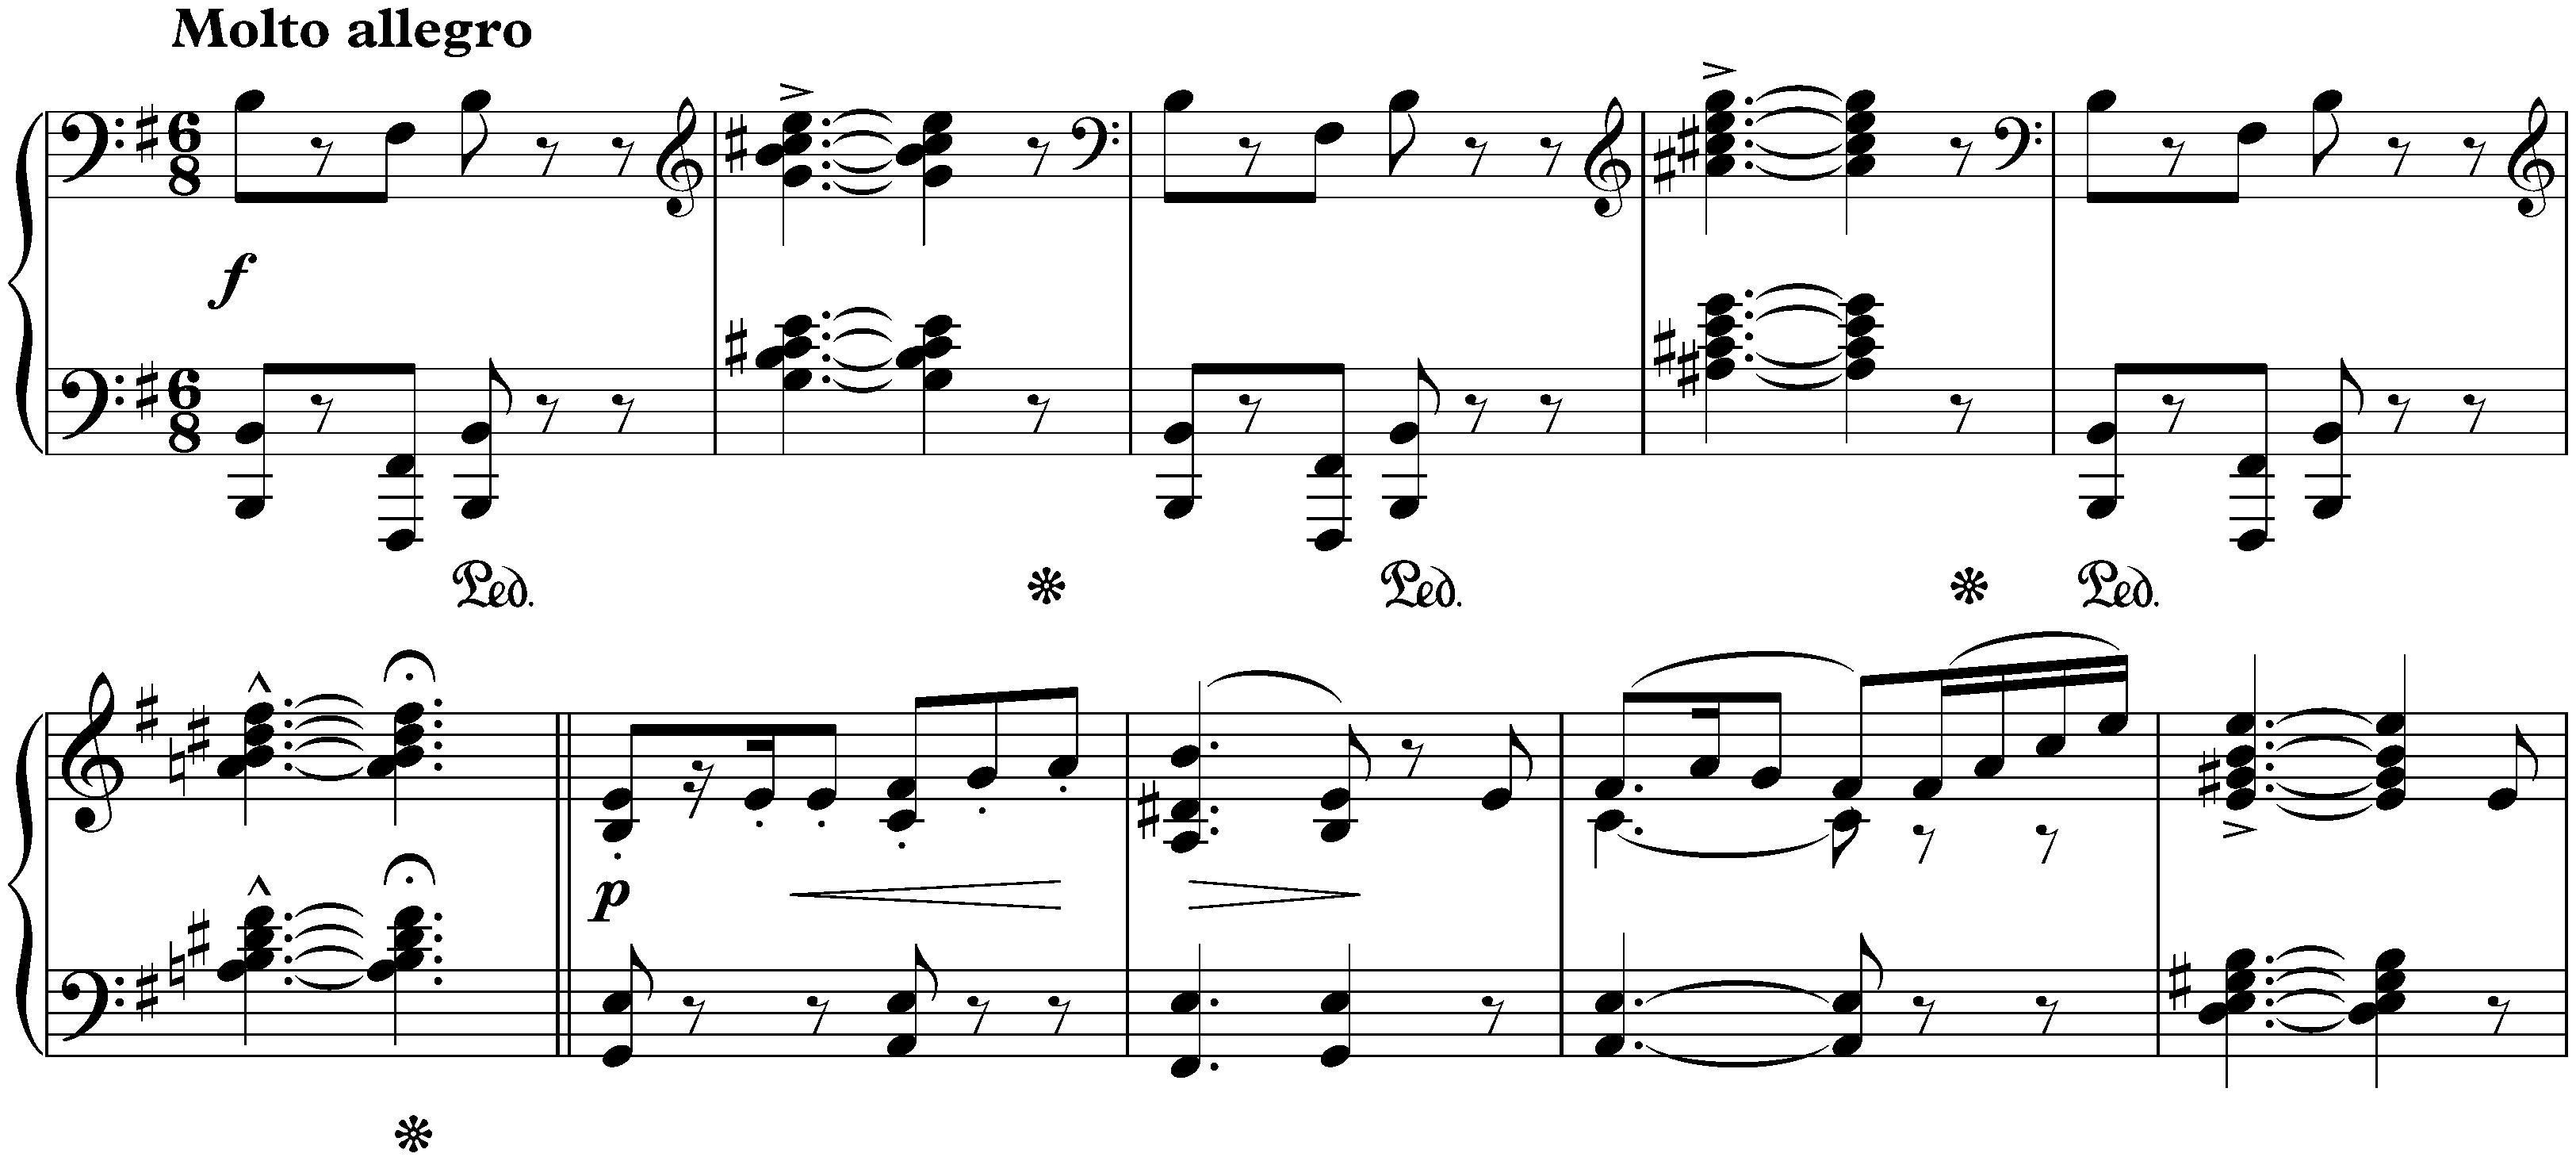 Sonata in E minor, op. 7; 4. Finale: Molto allegro